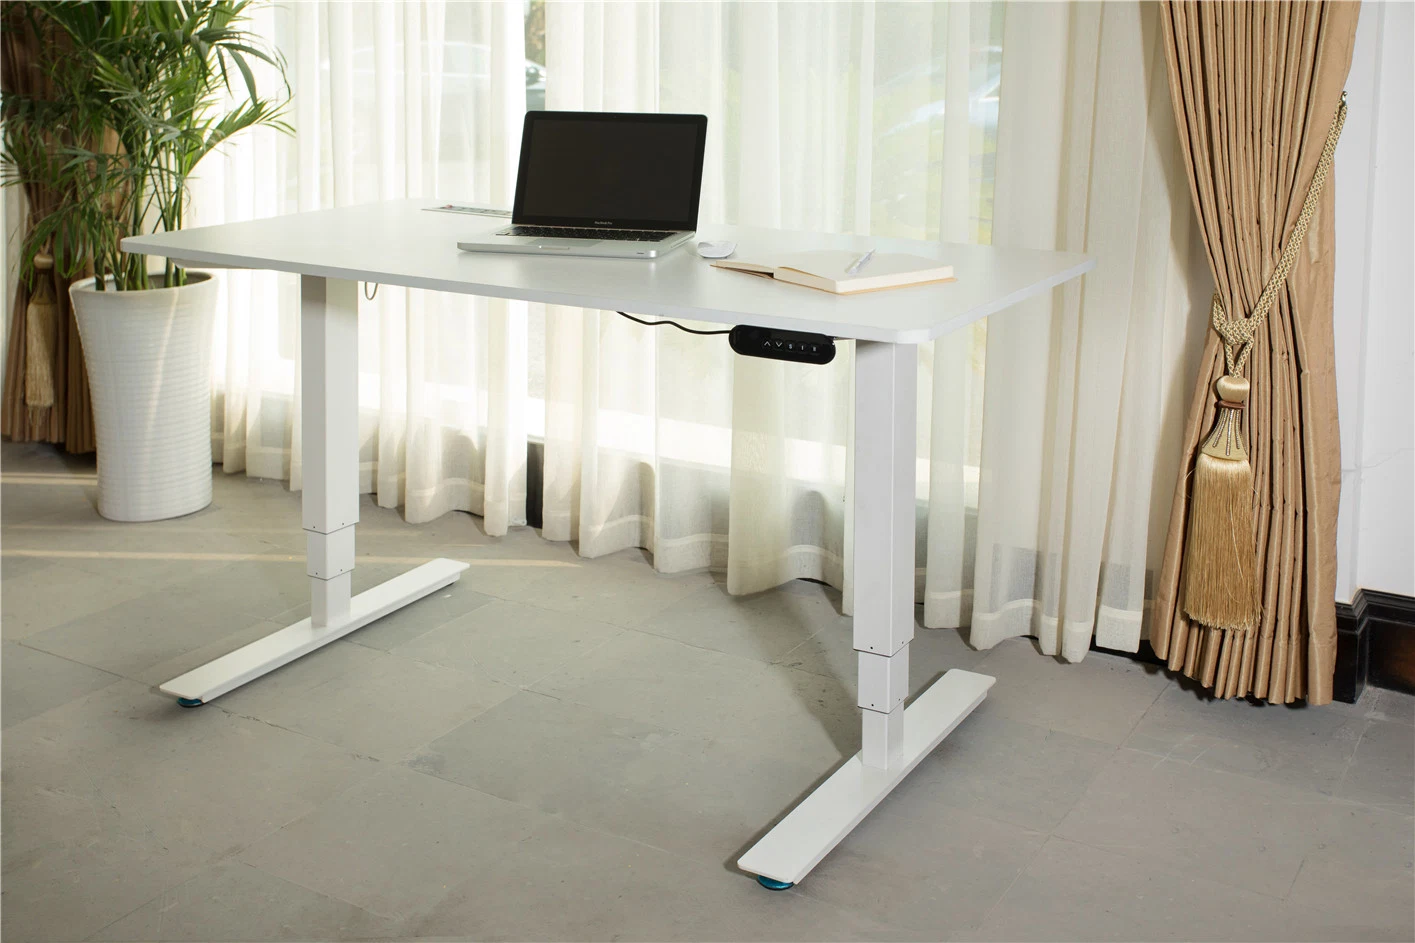 Ud2 Height Adjustable Standing Office Desk Office Furniture Student Desk